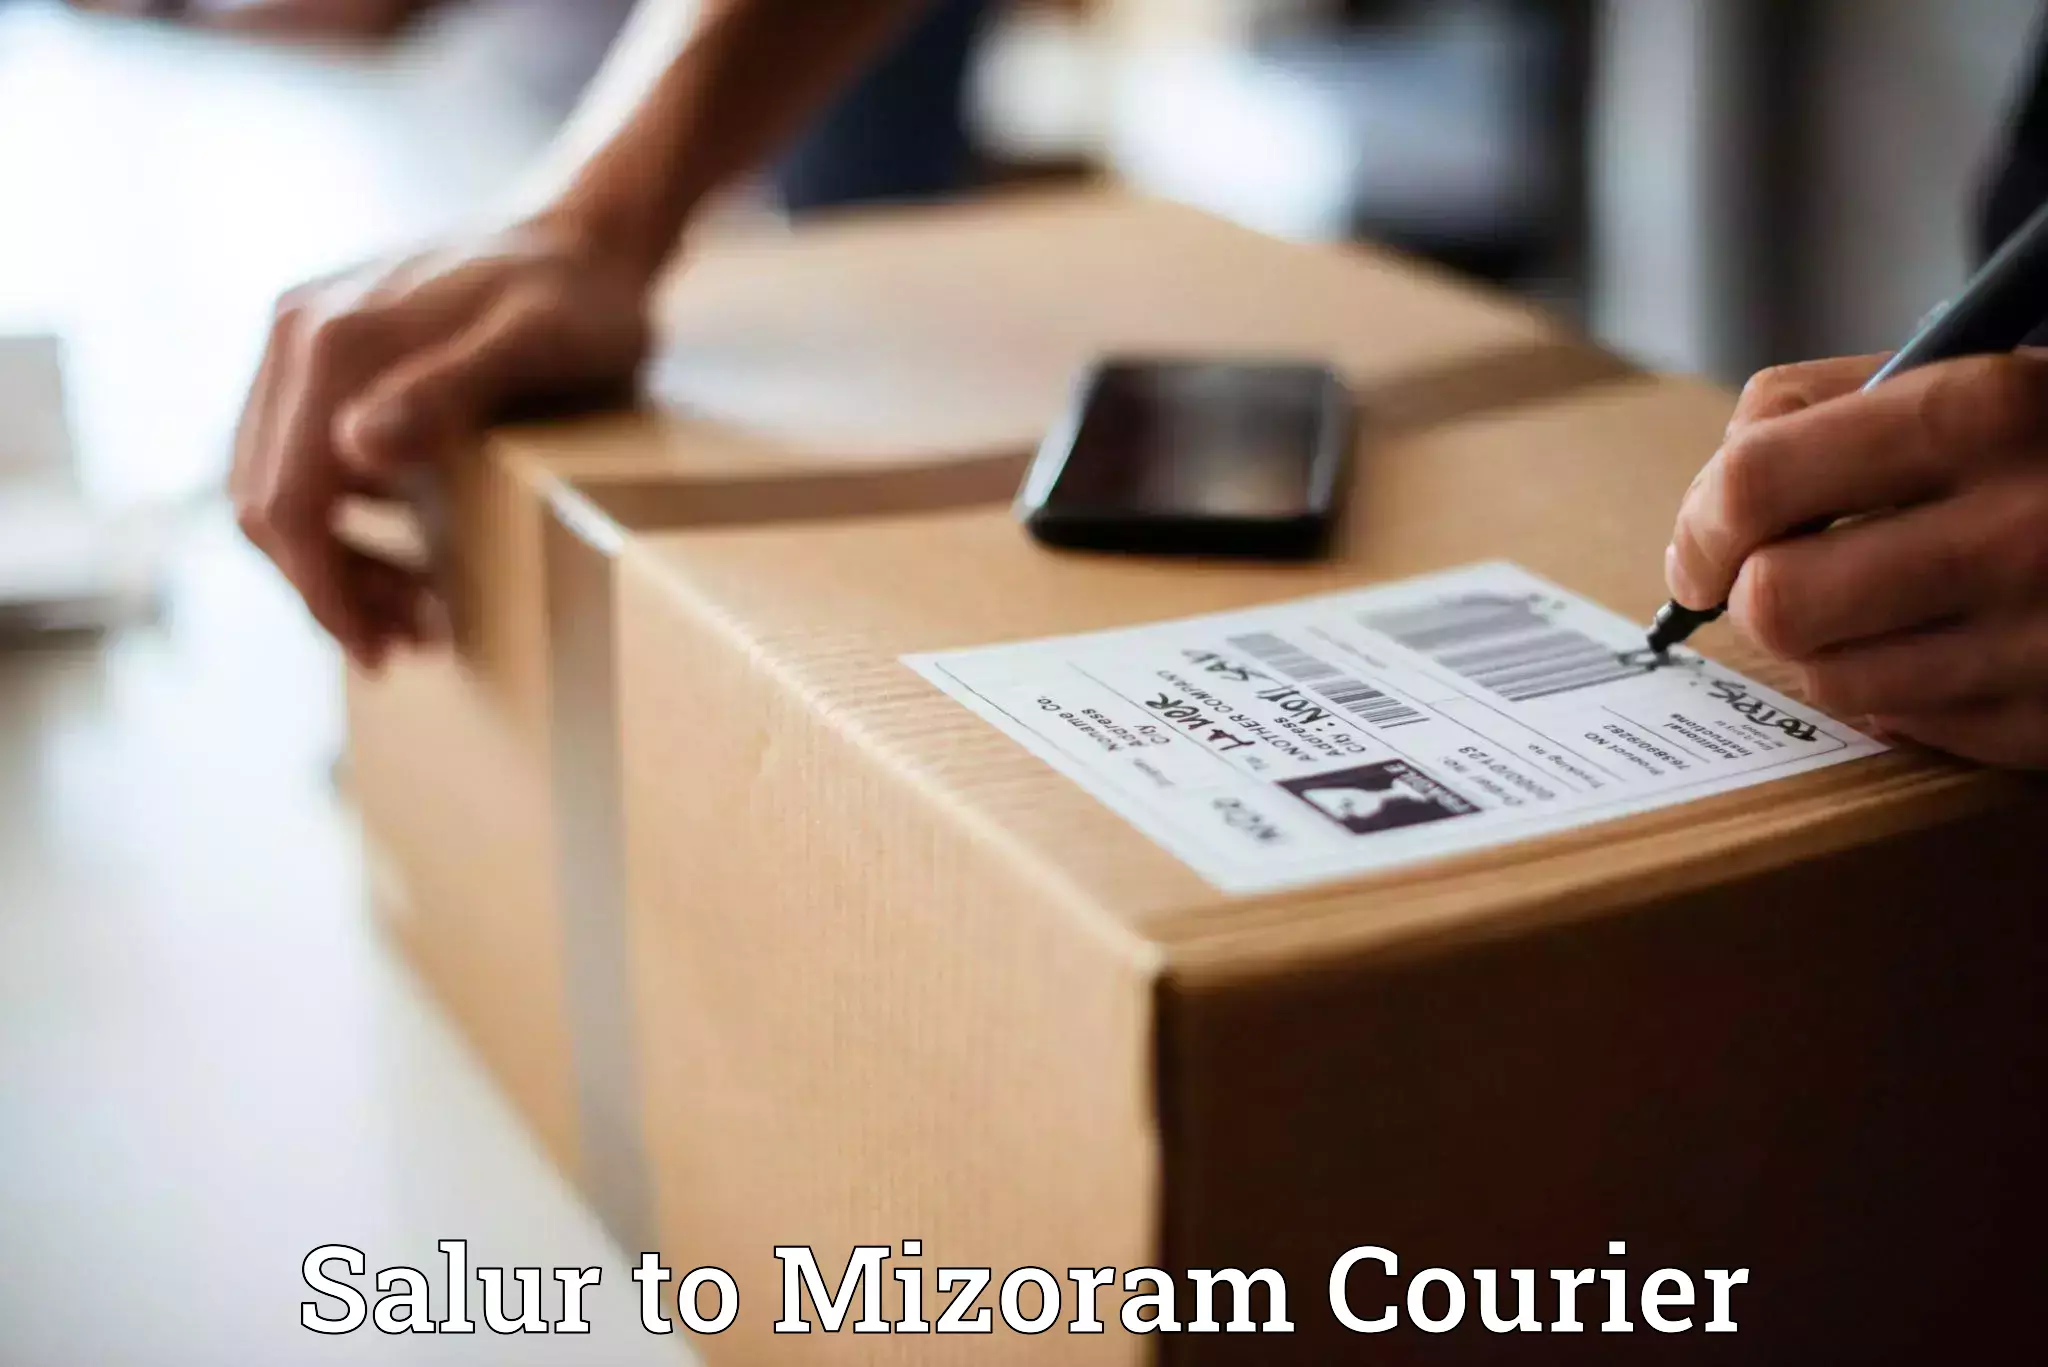 Customer-focused courier in Salur to Mizoram